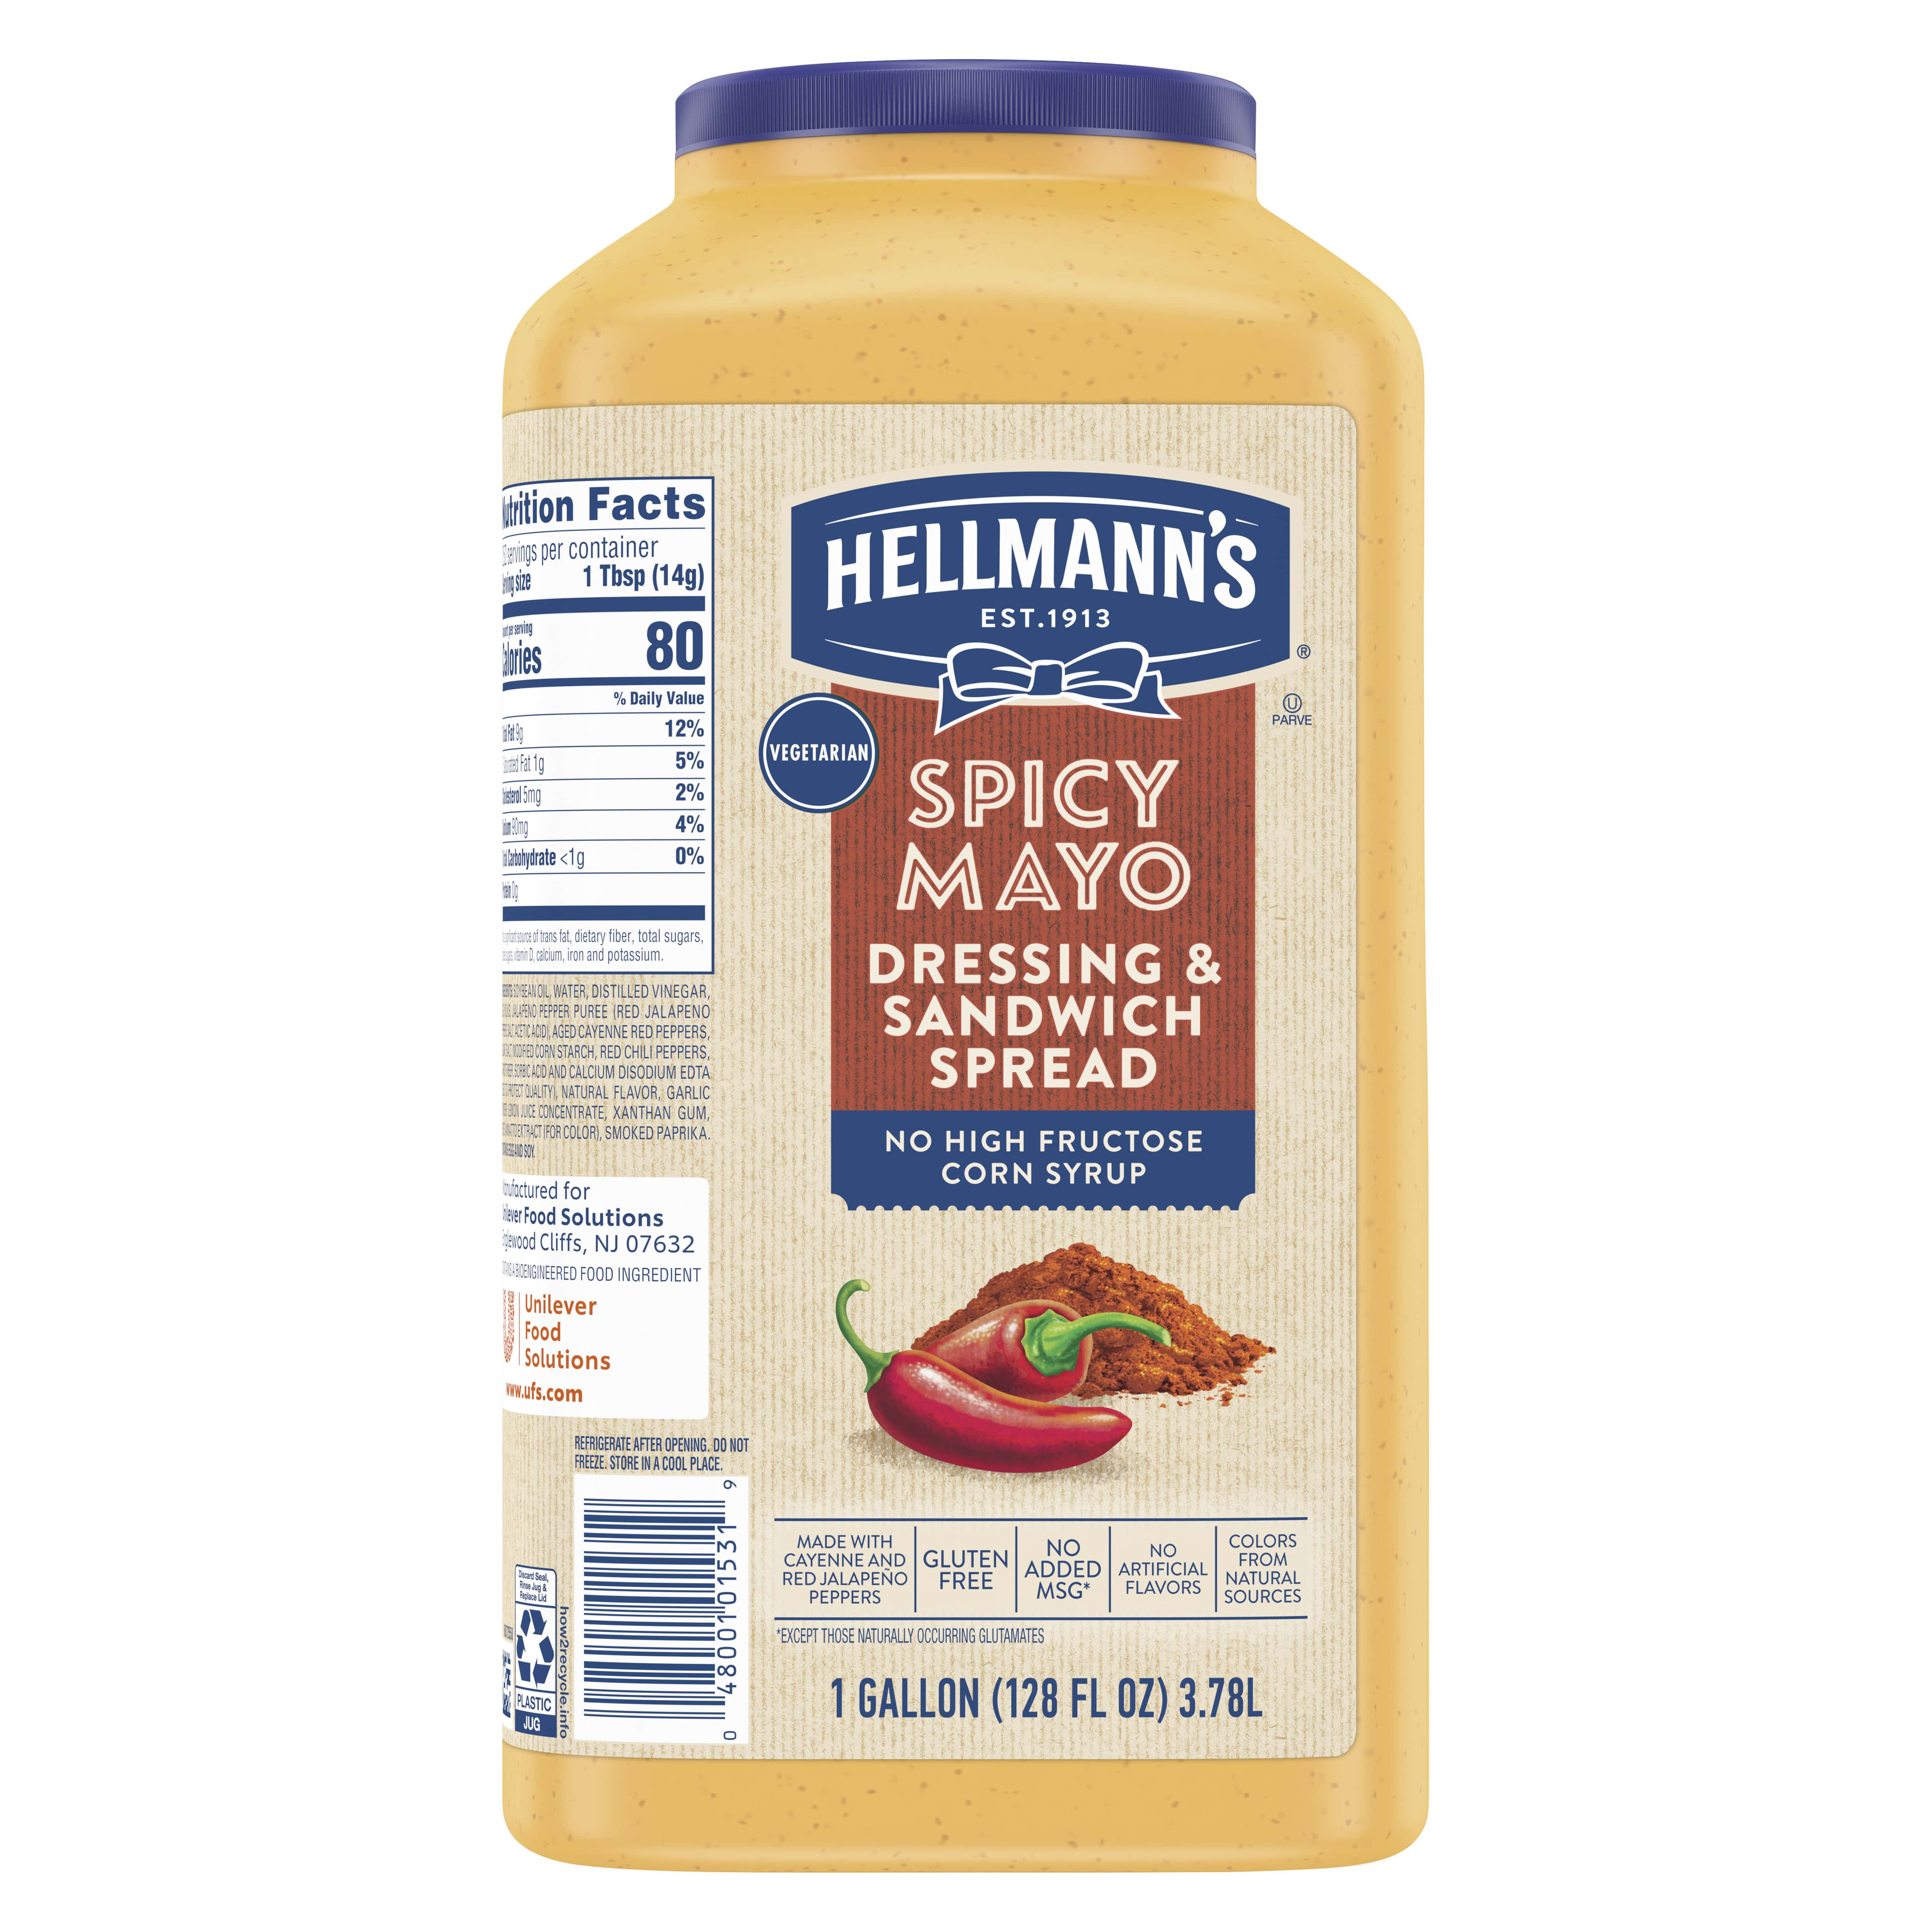 Hellmann’s® Spicy Mayo 2 x 1 Gal - 